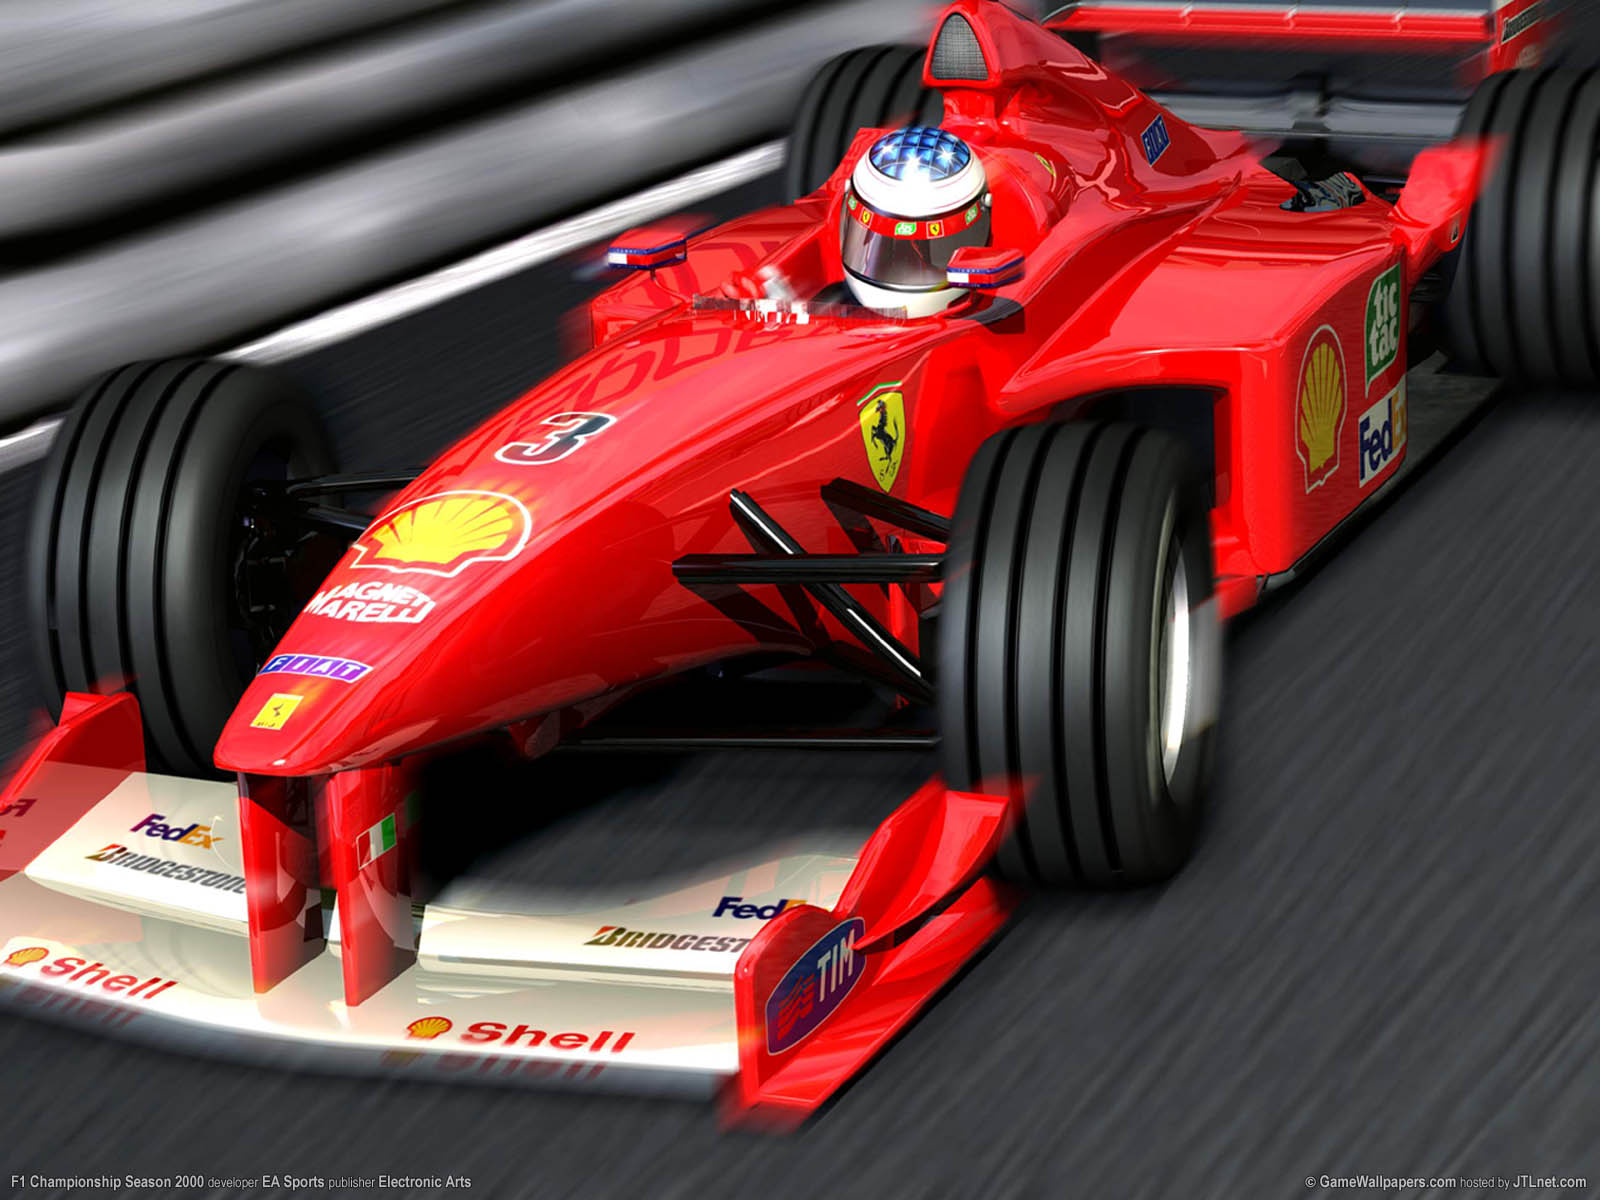 F1 Championship Season 2000 fond d'cran 04 1600x1200